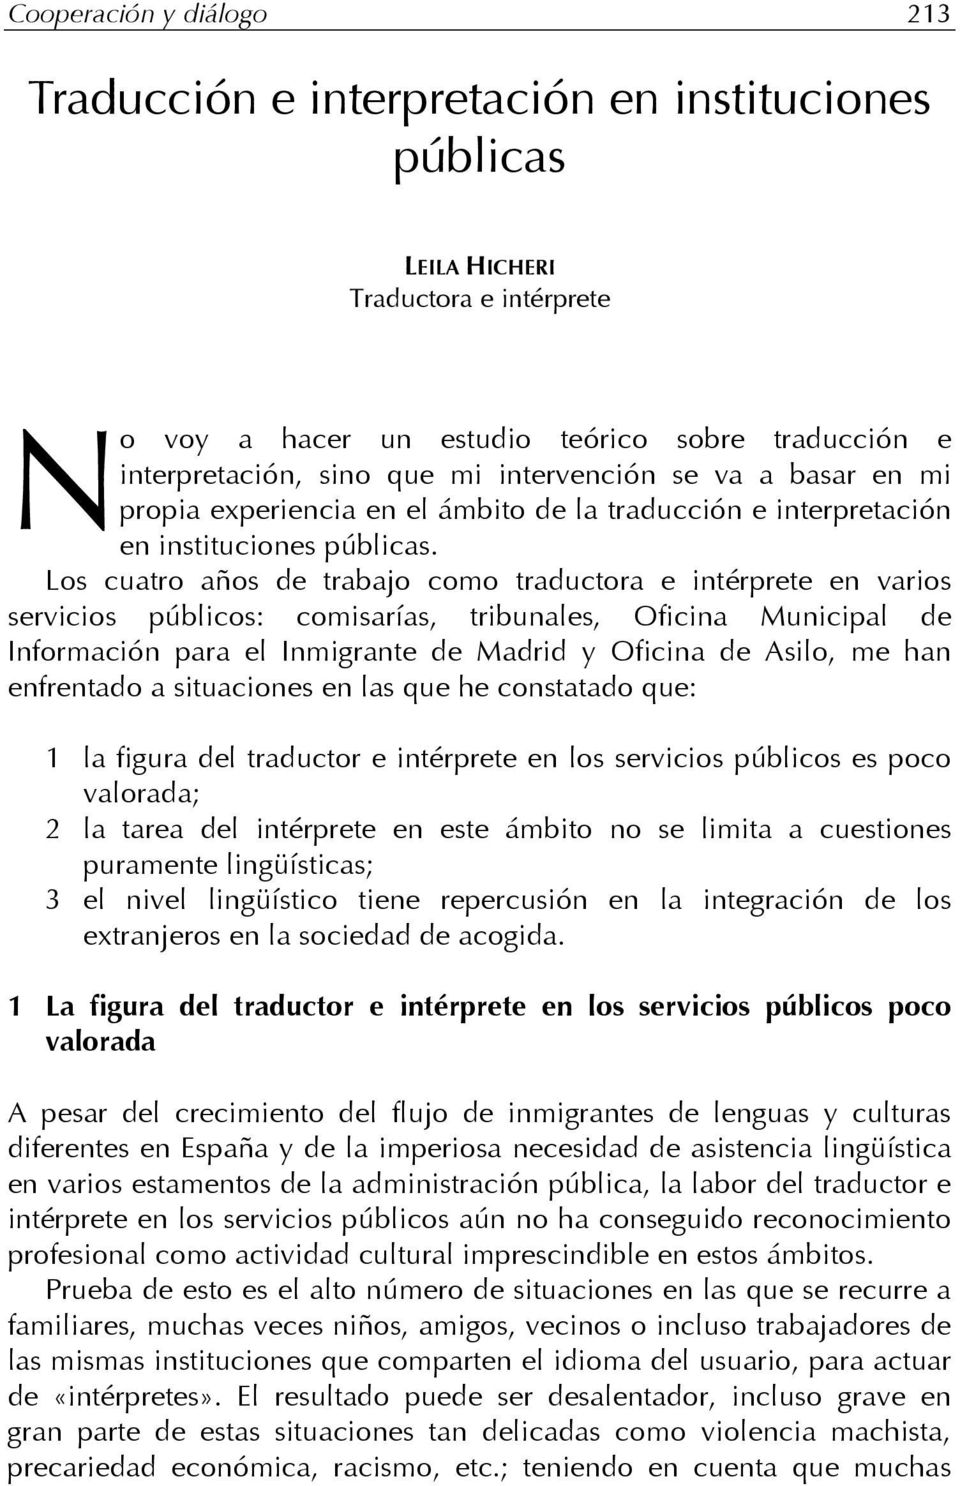 Los cuatro años de trabajo como traductora e intérprete en varios servicios públicos: comisarías, tribunales, Oficina Municipal de Información para el Inmigrante de Madrid y Oficina de Asilo, me han